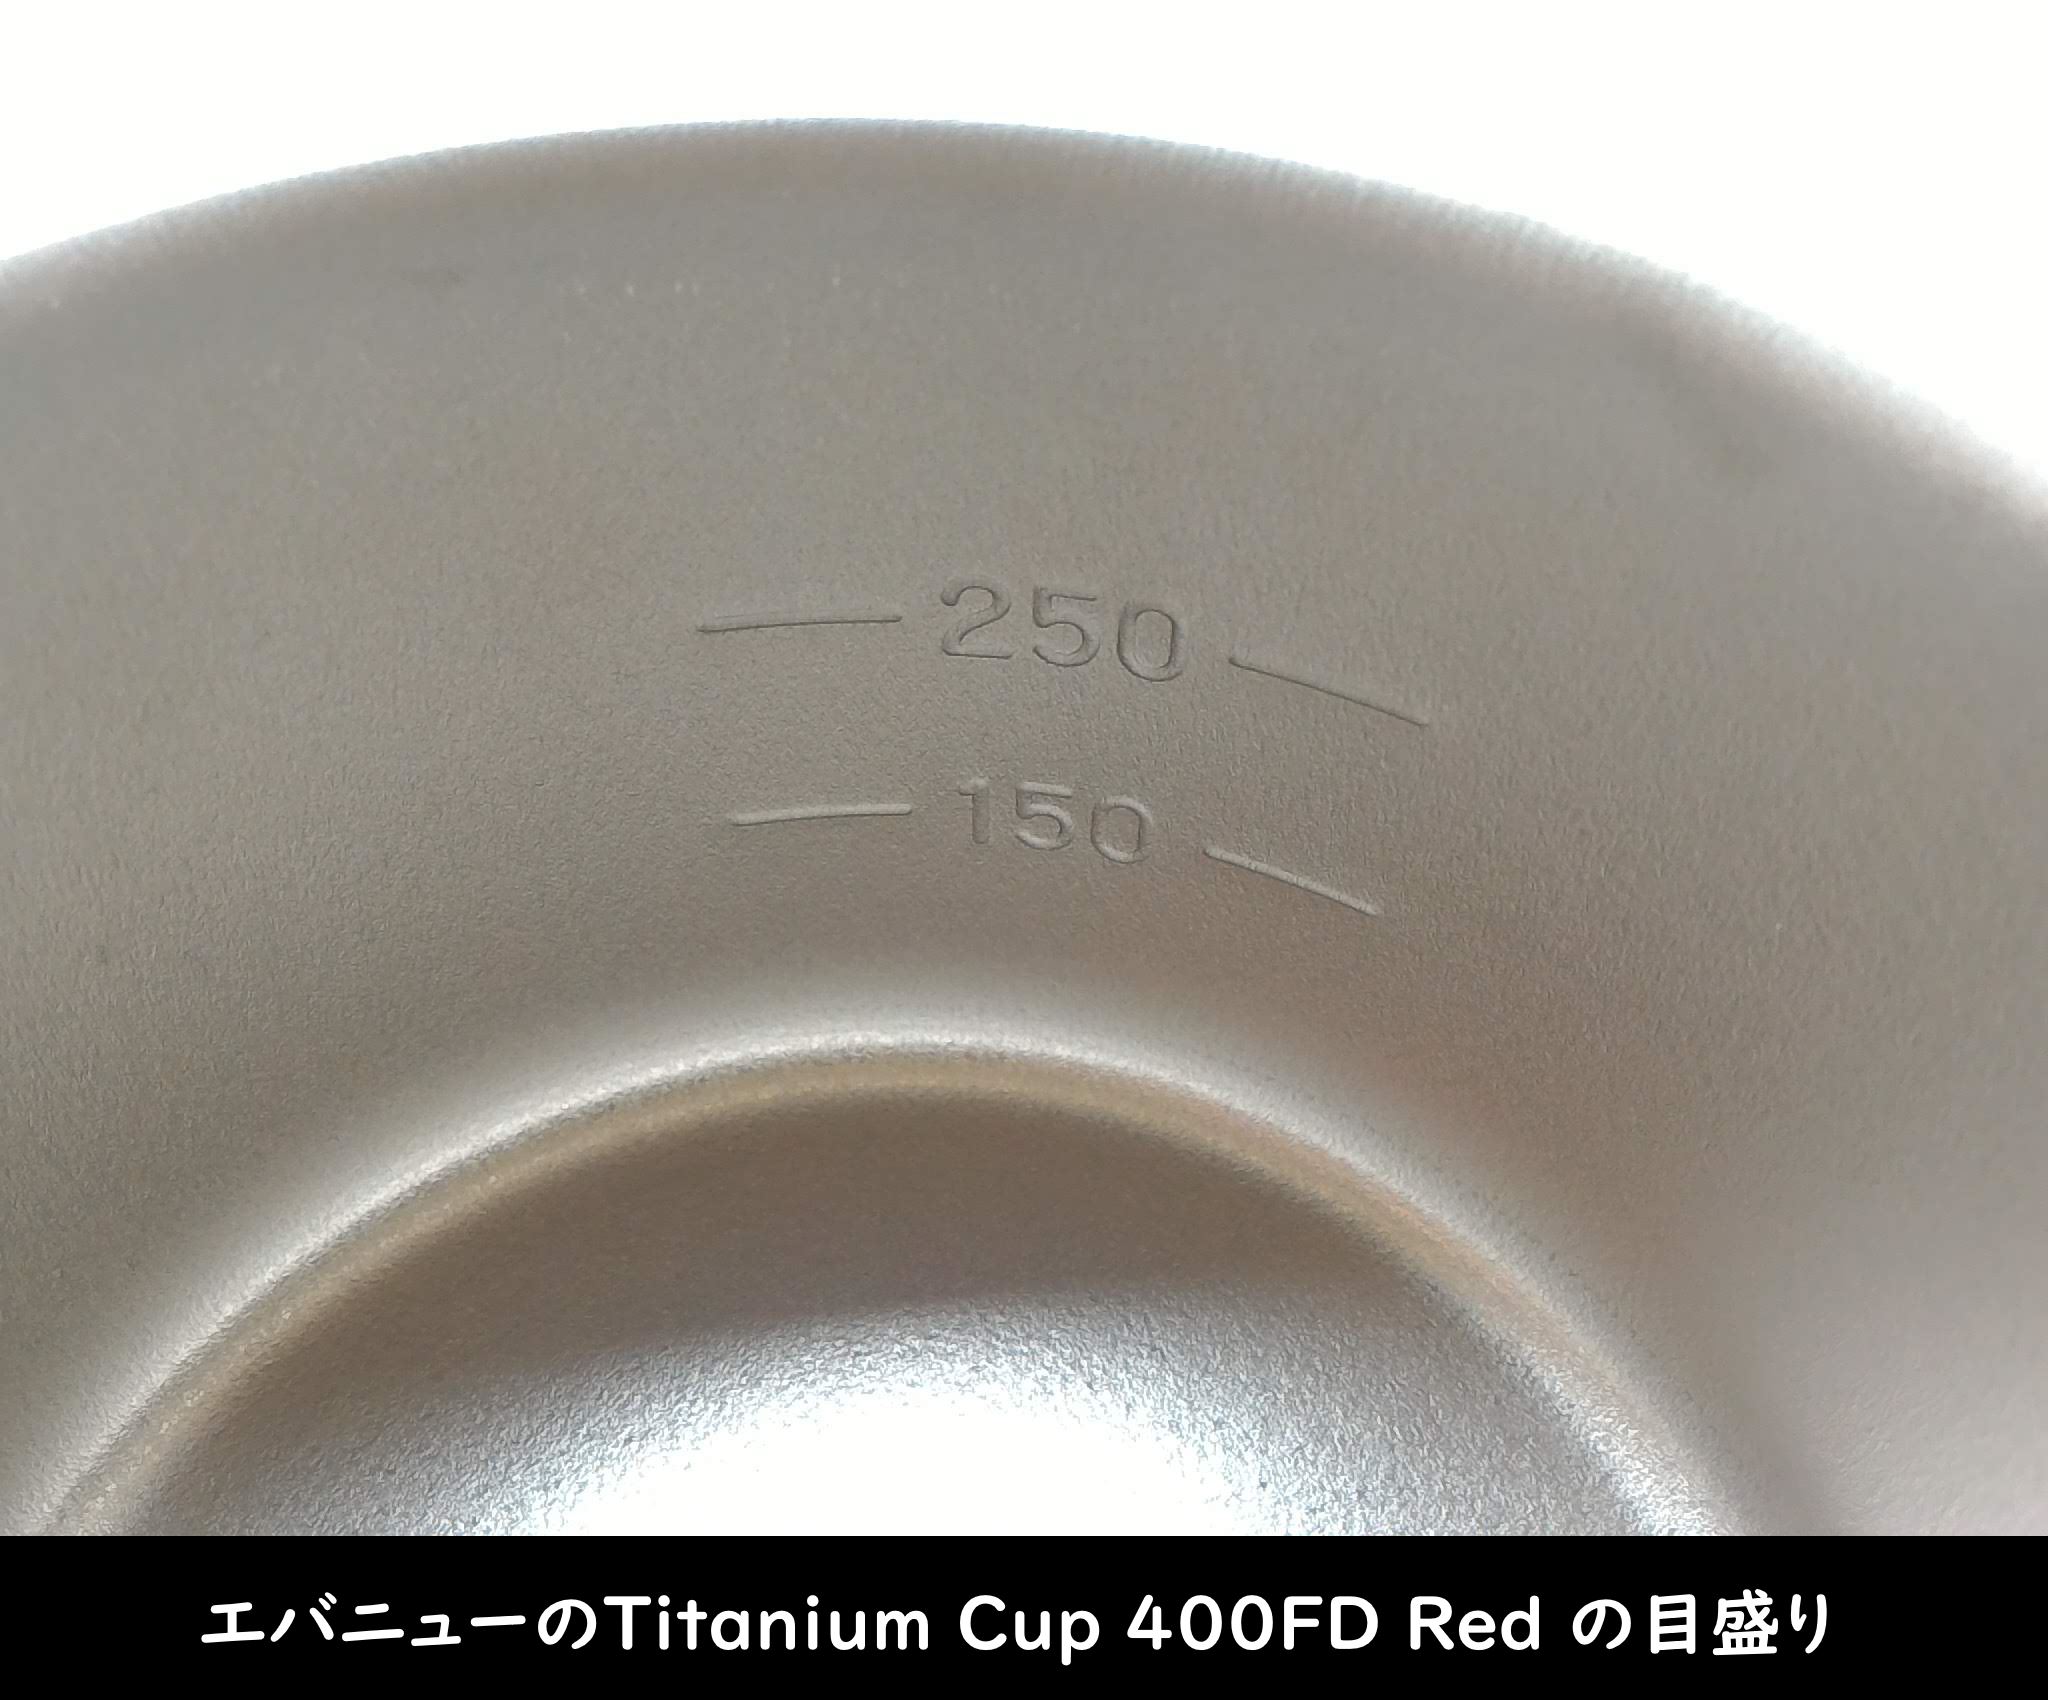 エバニューの「Titanium Cup 400FD Red」目盛り